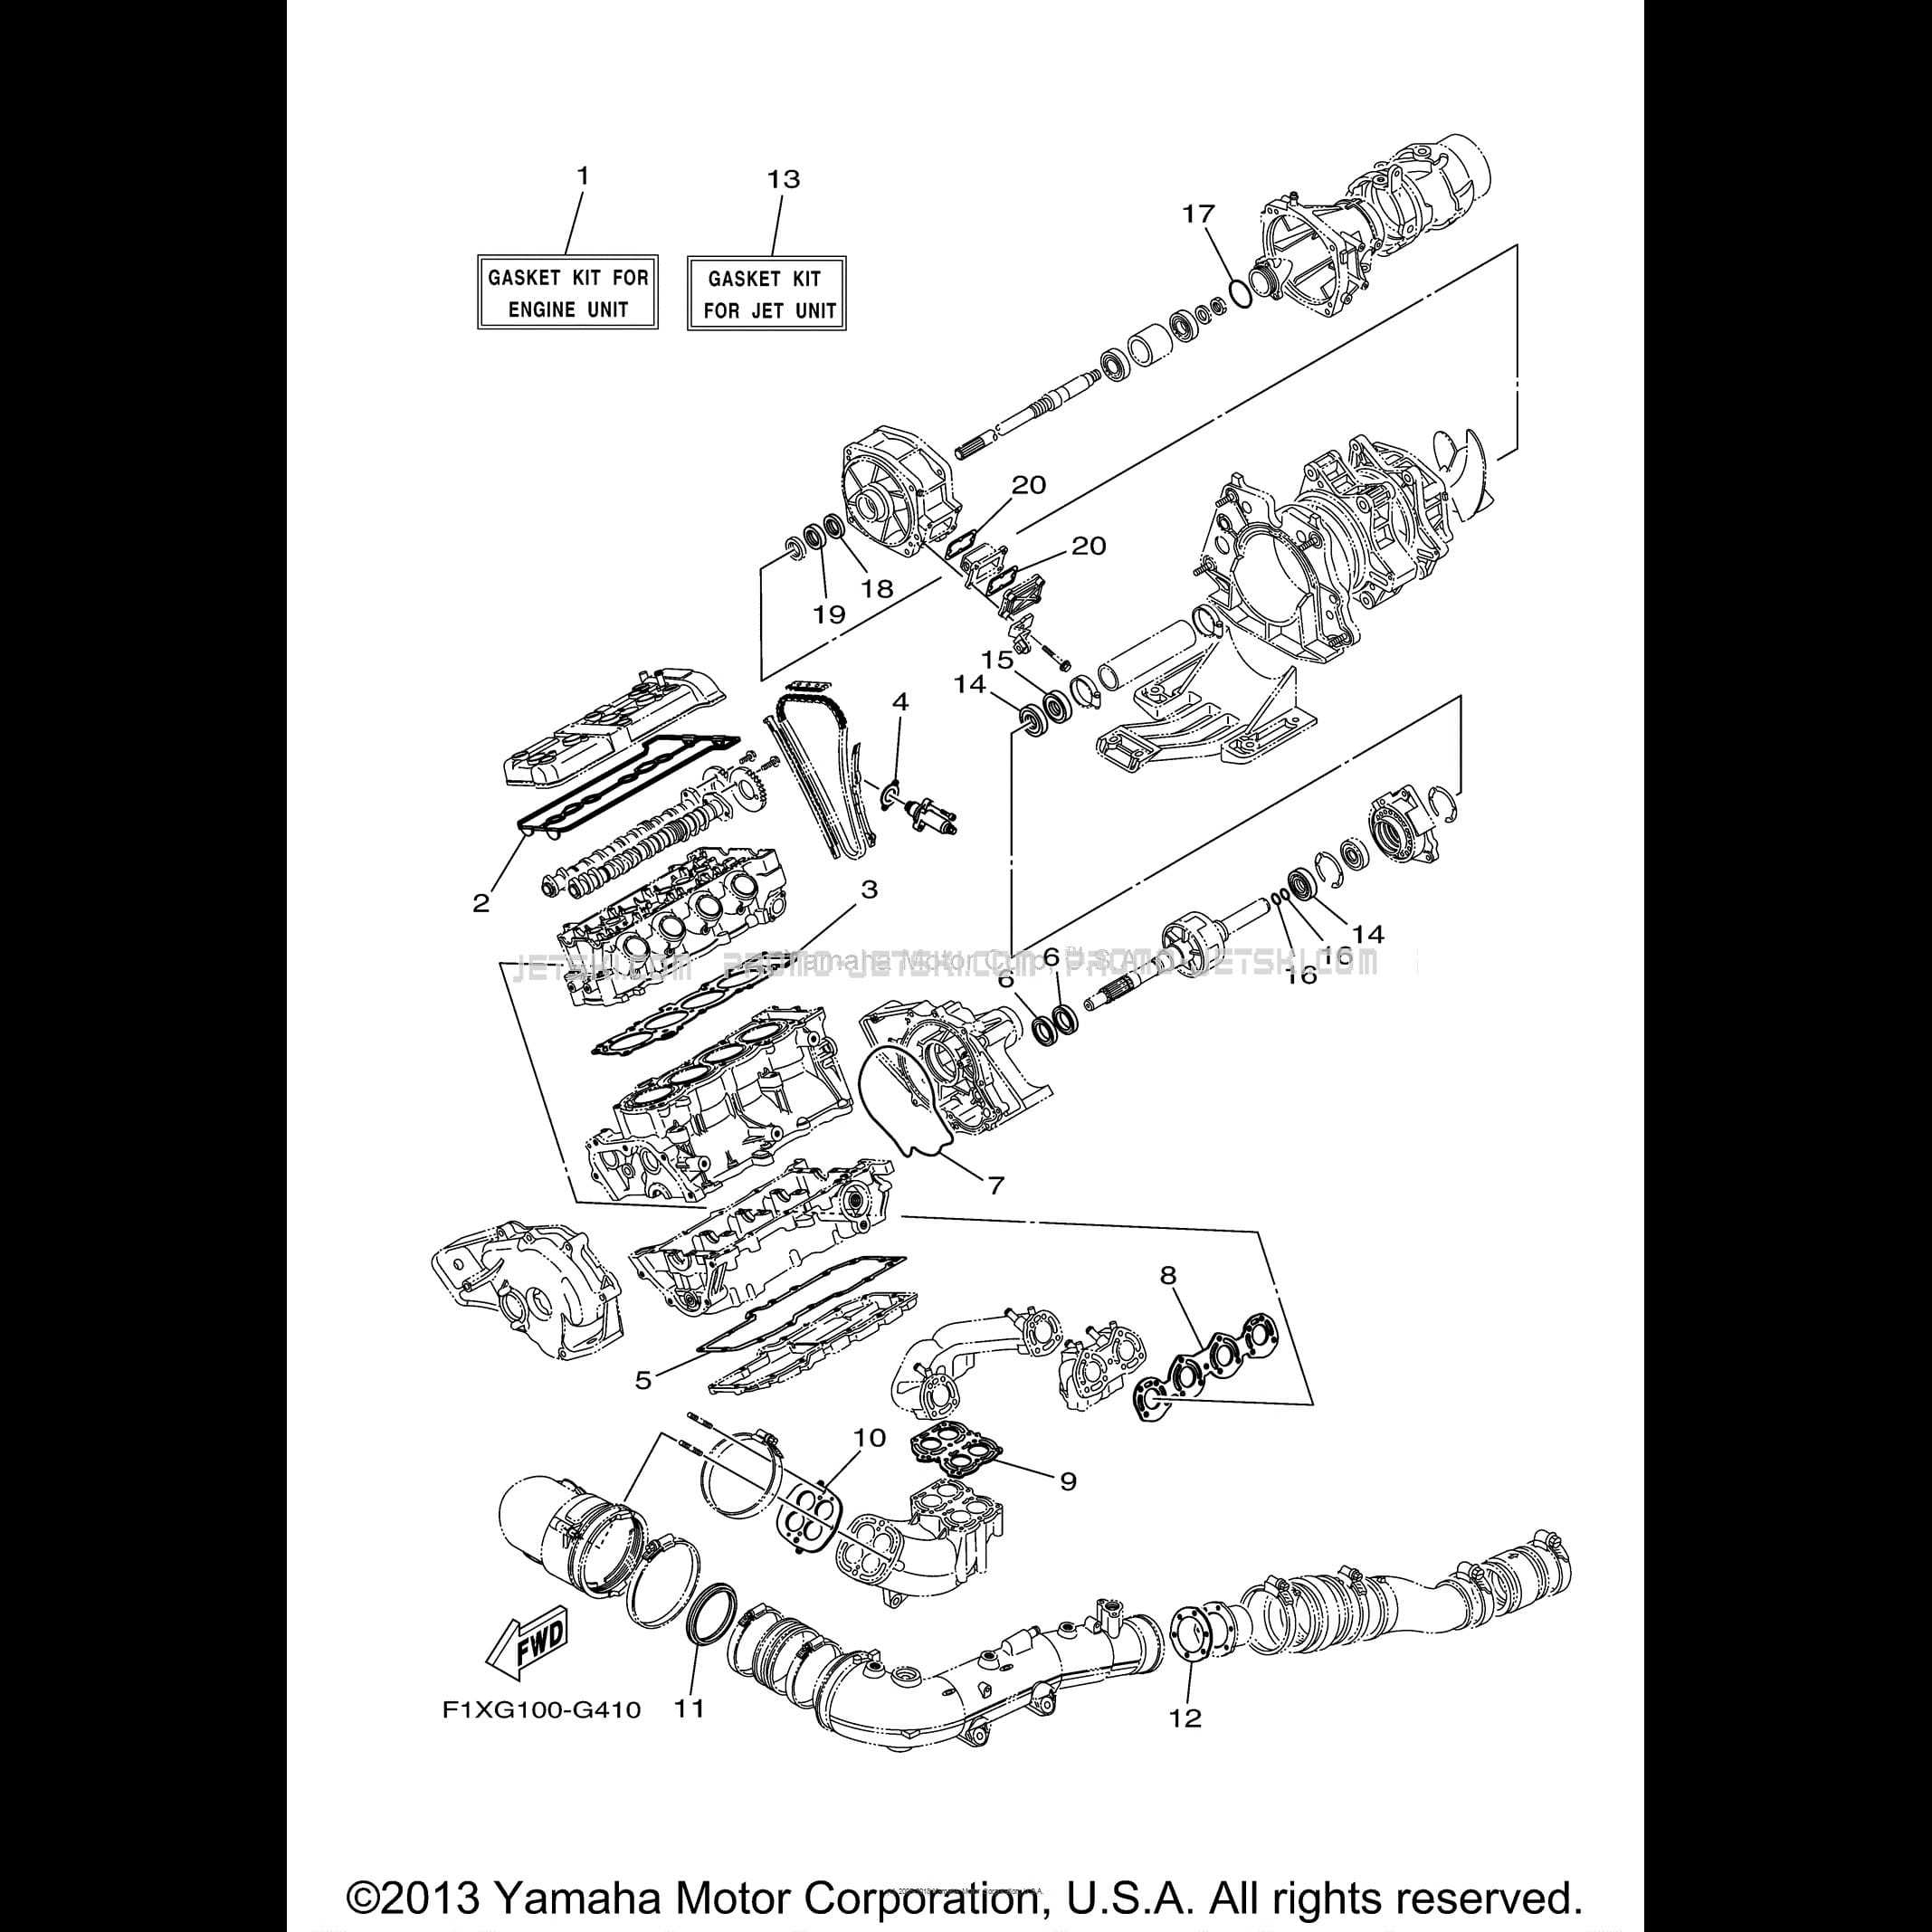 Werkstattbuch Yamaha Water Vehicles Manual 1993-1996 W806 Jet Ski 